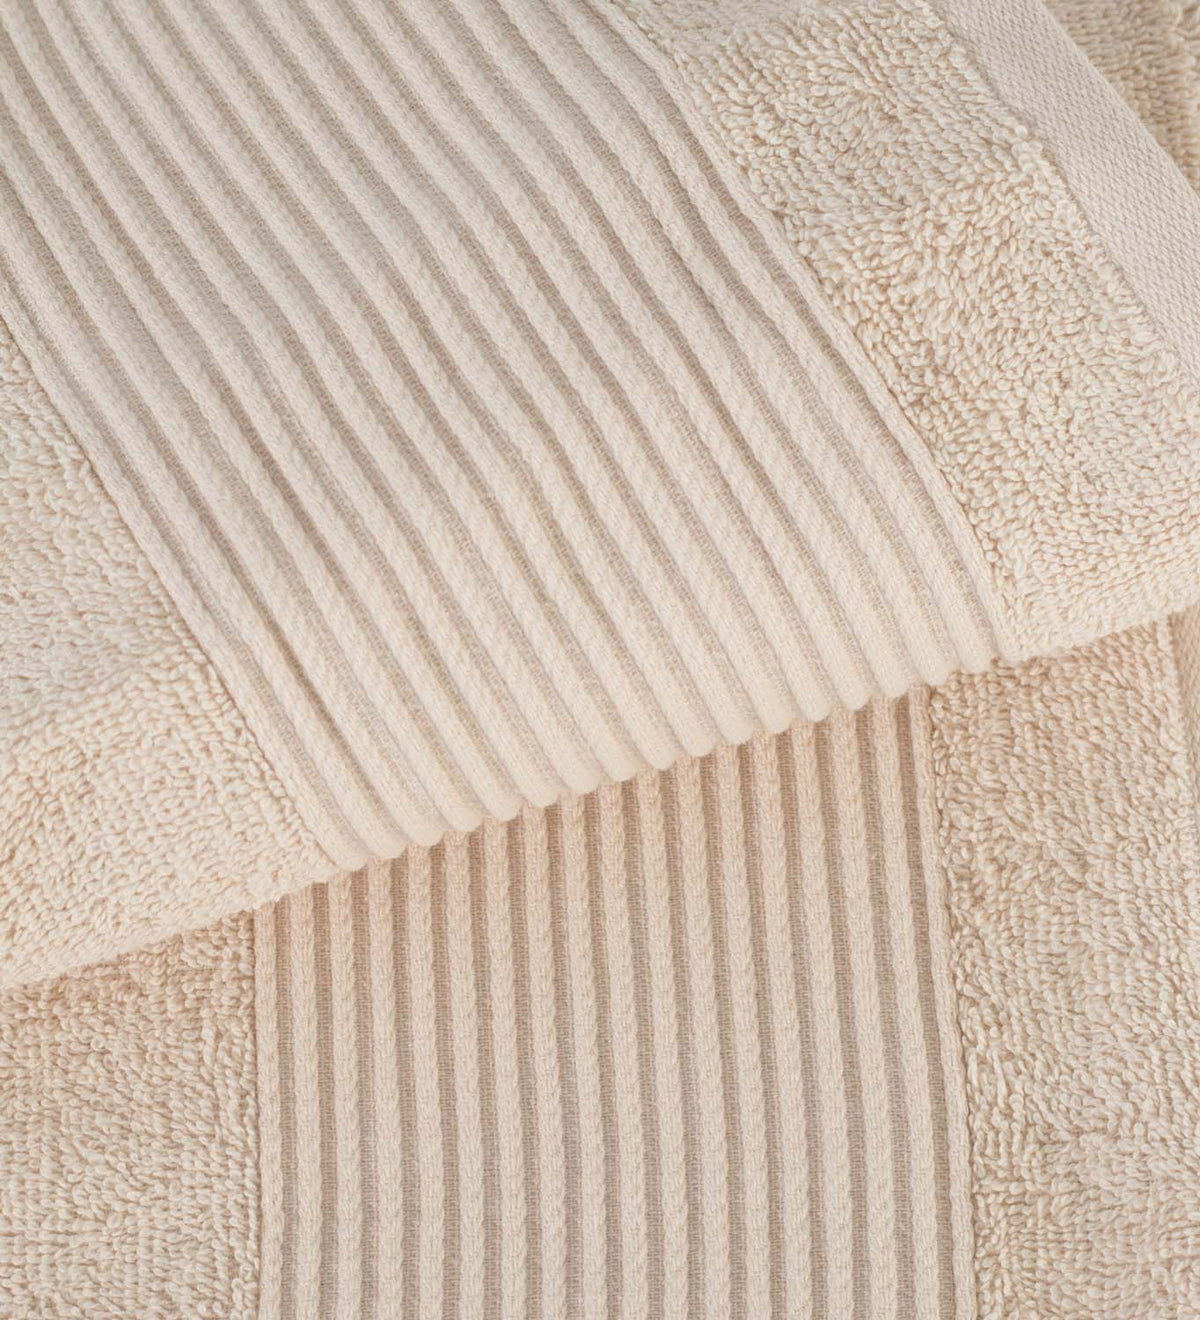 Plush Texture Towels